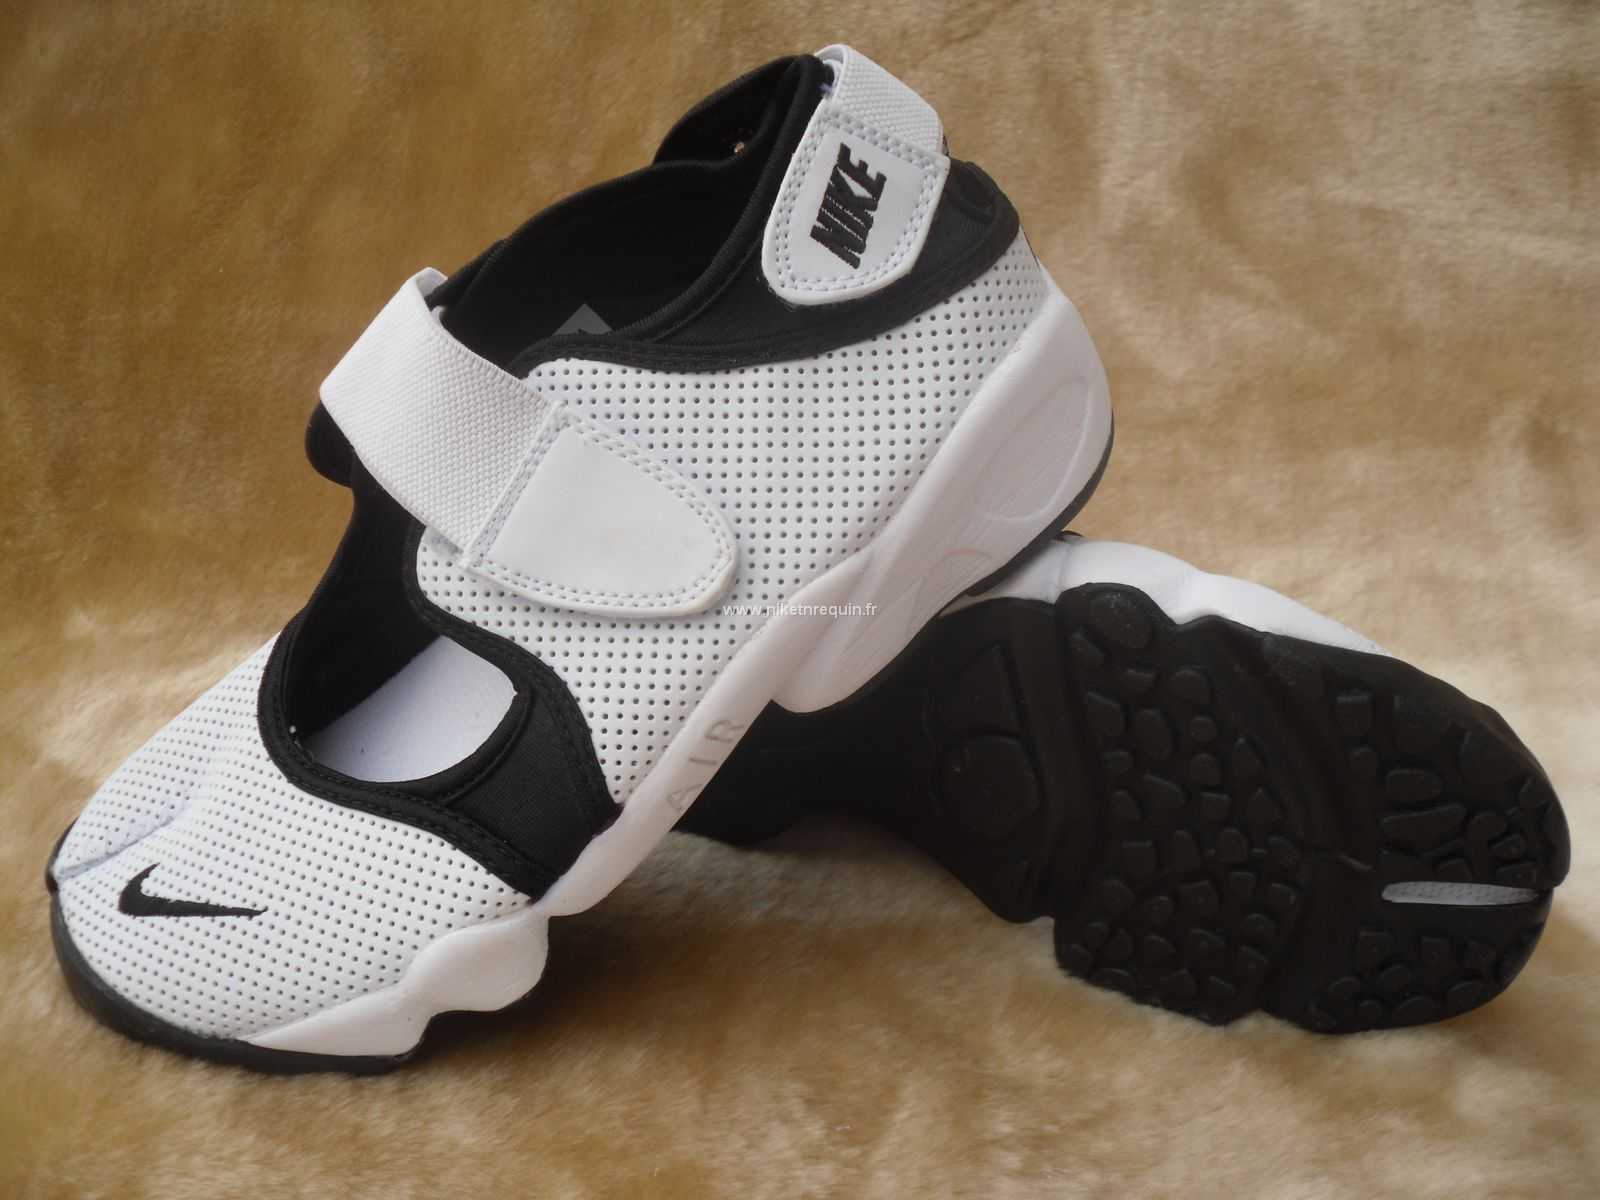 Nouveau Modele De La Mode Des Chaussures Nike Shox Rift Blanc Noir